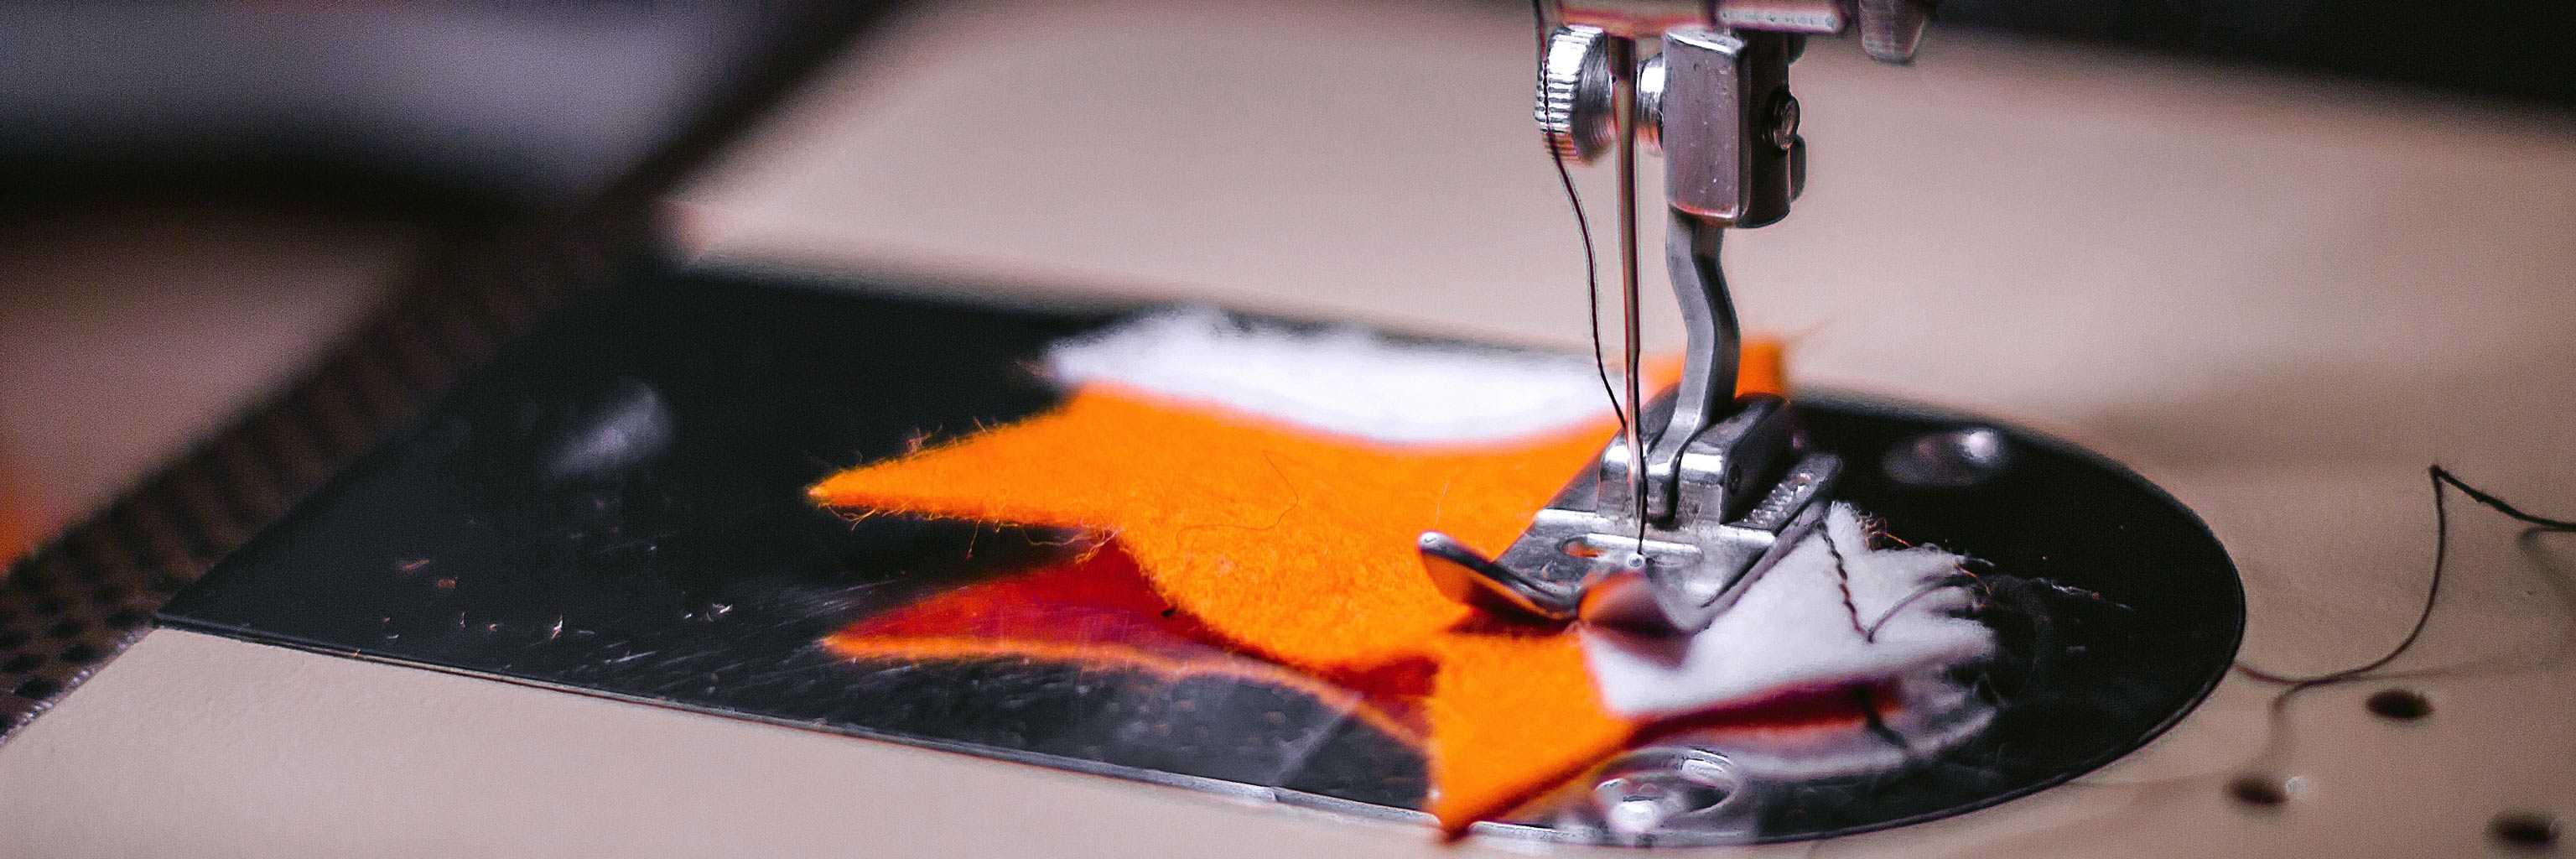 Close up of a sewing machine stitching